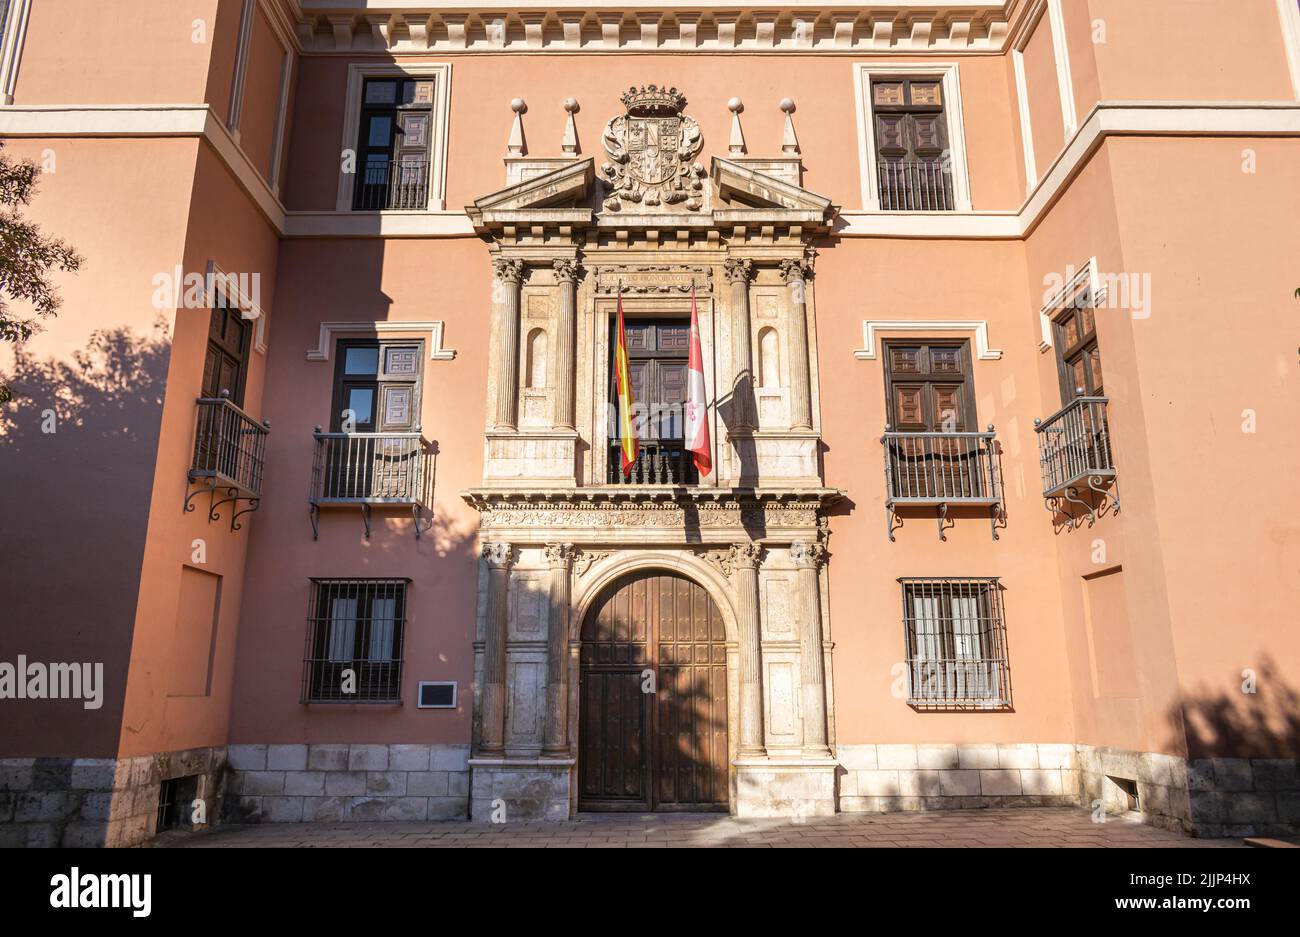 Vista de la fachada de arquitectura renacentista siglo XVI del palacio de Fabio Nelli en la ciudad de Valladolid, España Stock Photo